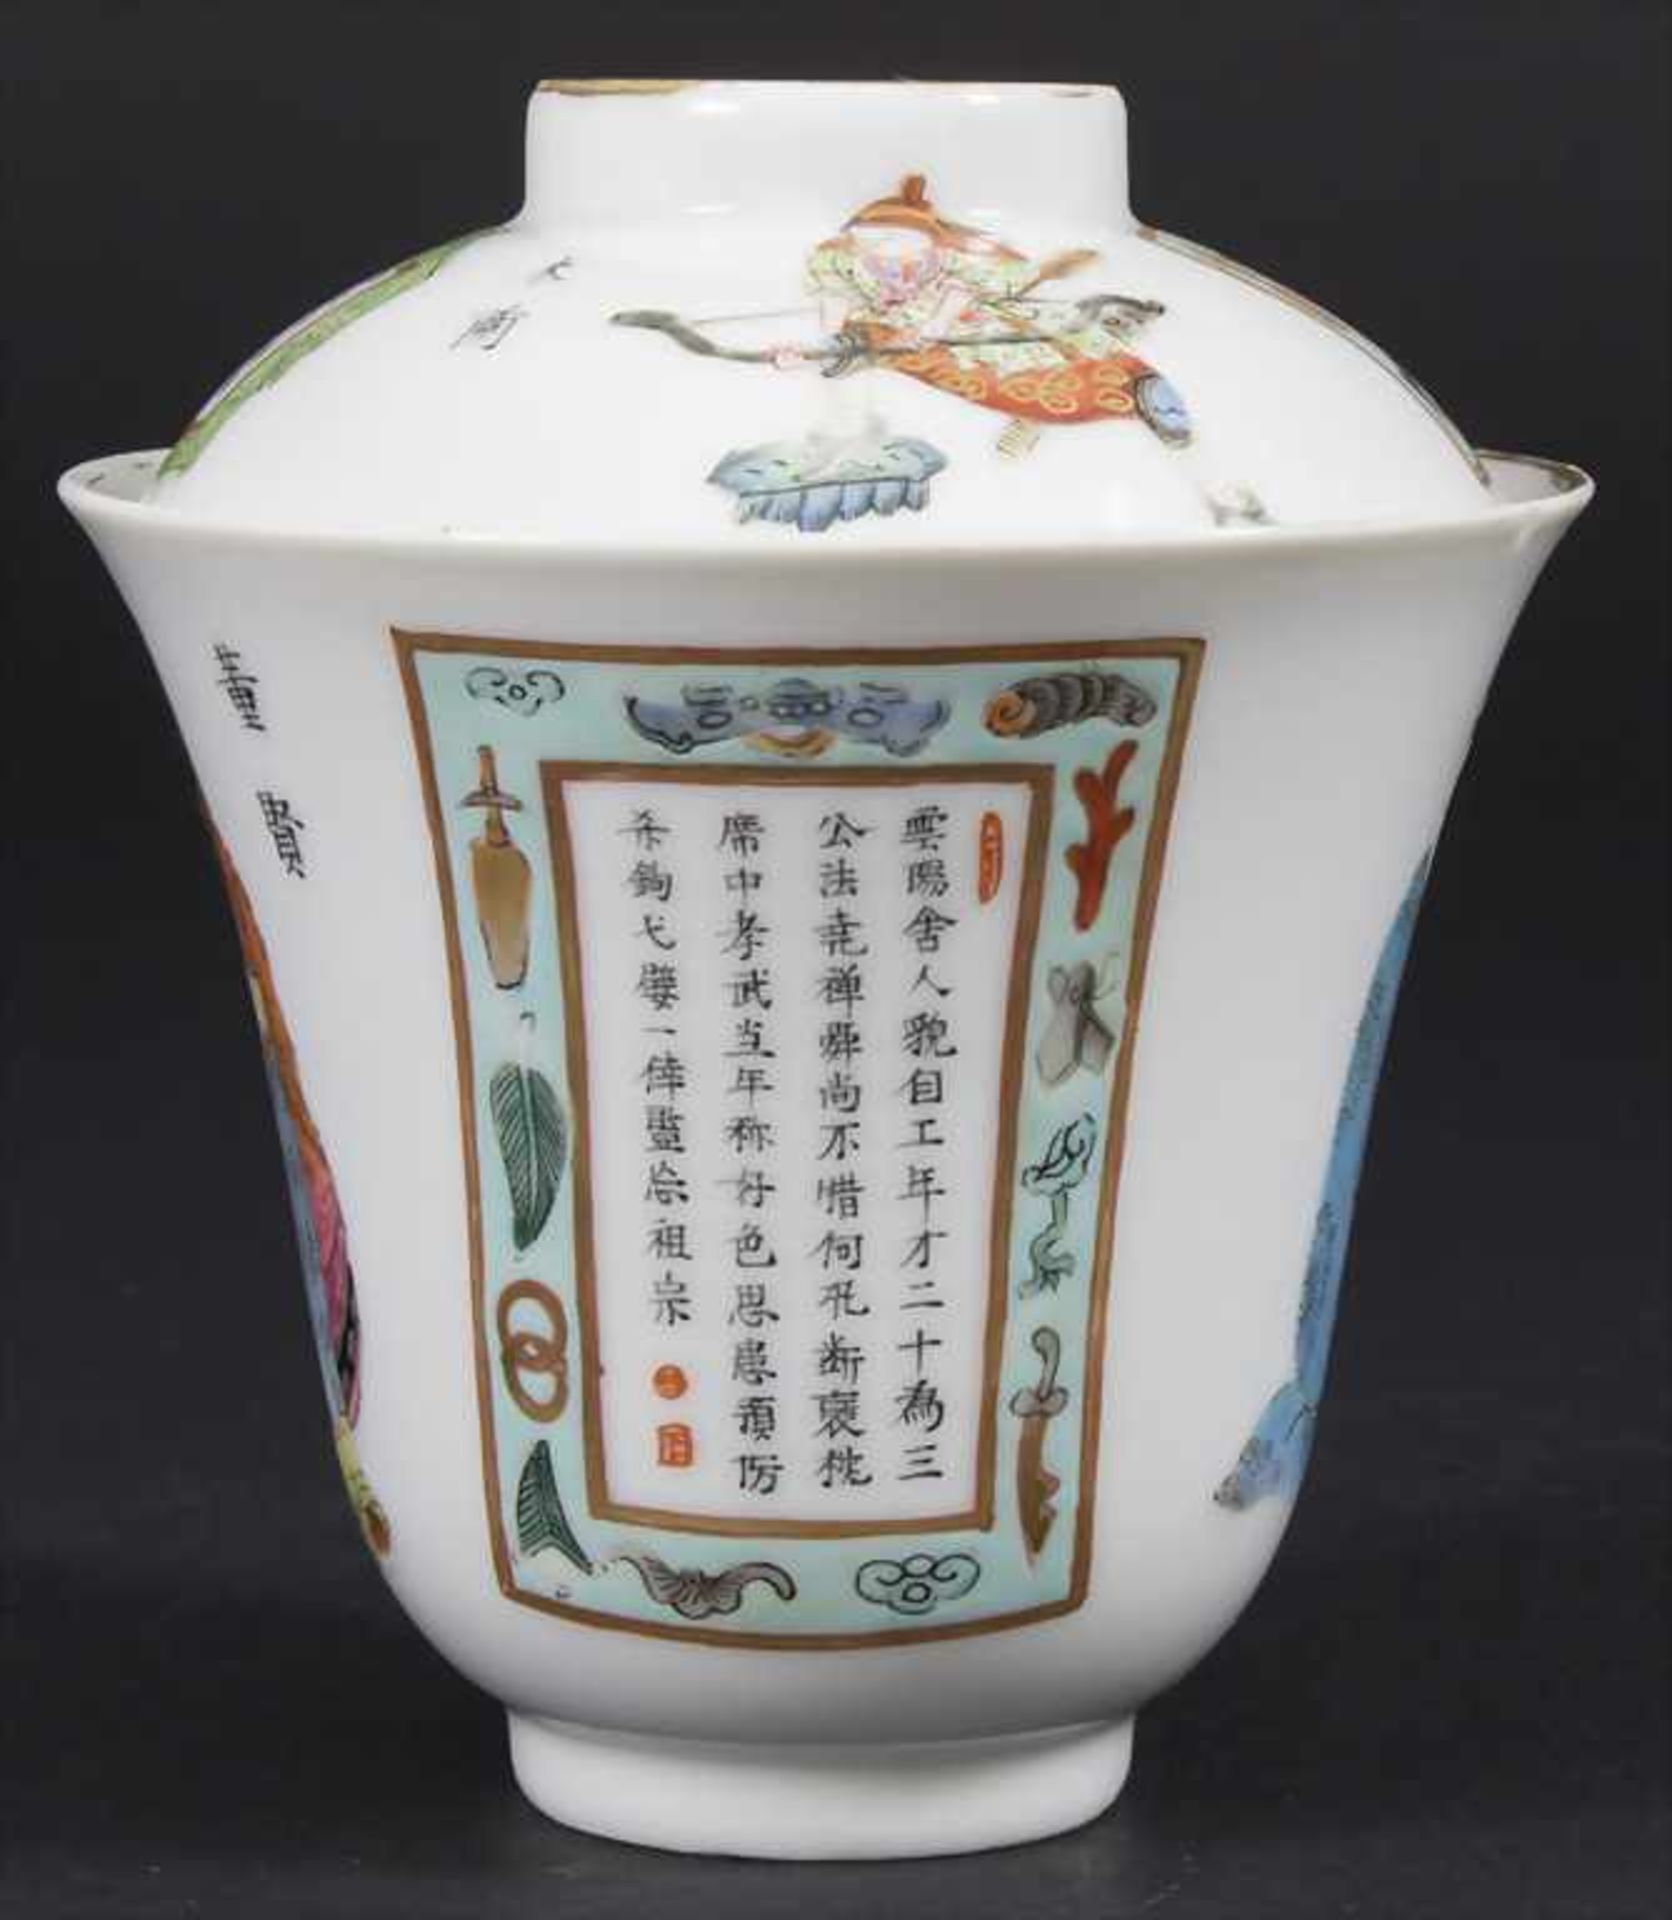 Porzellan-Deckelkumme / A porcelain lidded bowl, China, Qing-Dynastie (1644-1911), 18./19. Jh. - Bild 2 aus 6